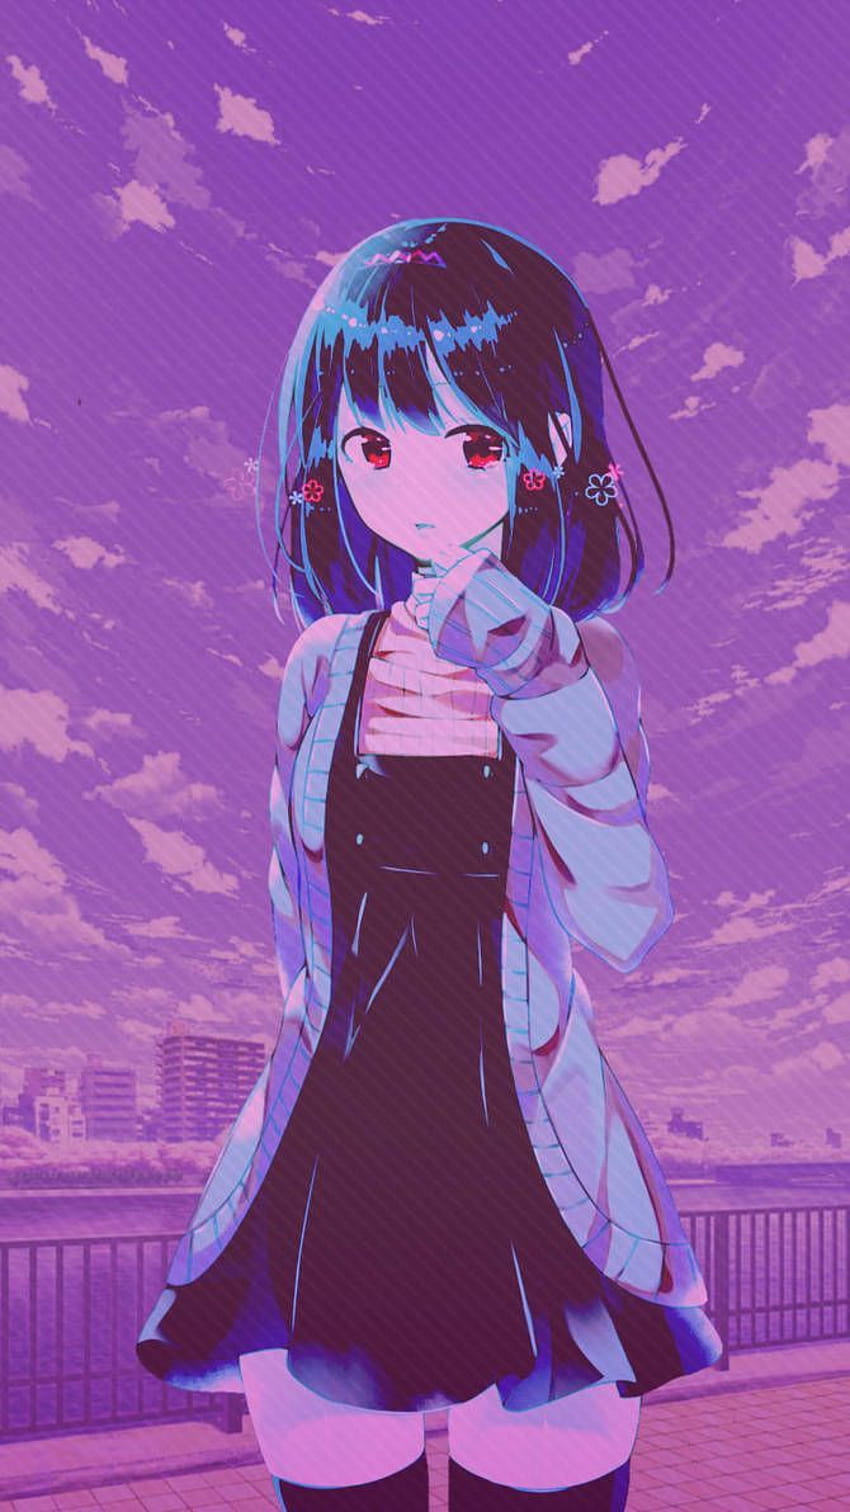 butter_charm on art, anime girl purple aesthetic HD phone wallpaper